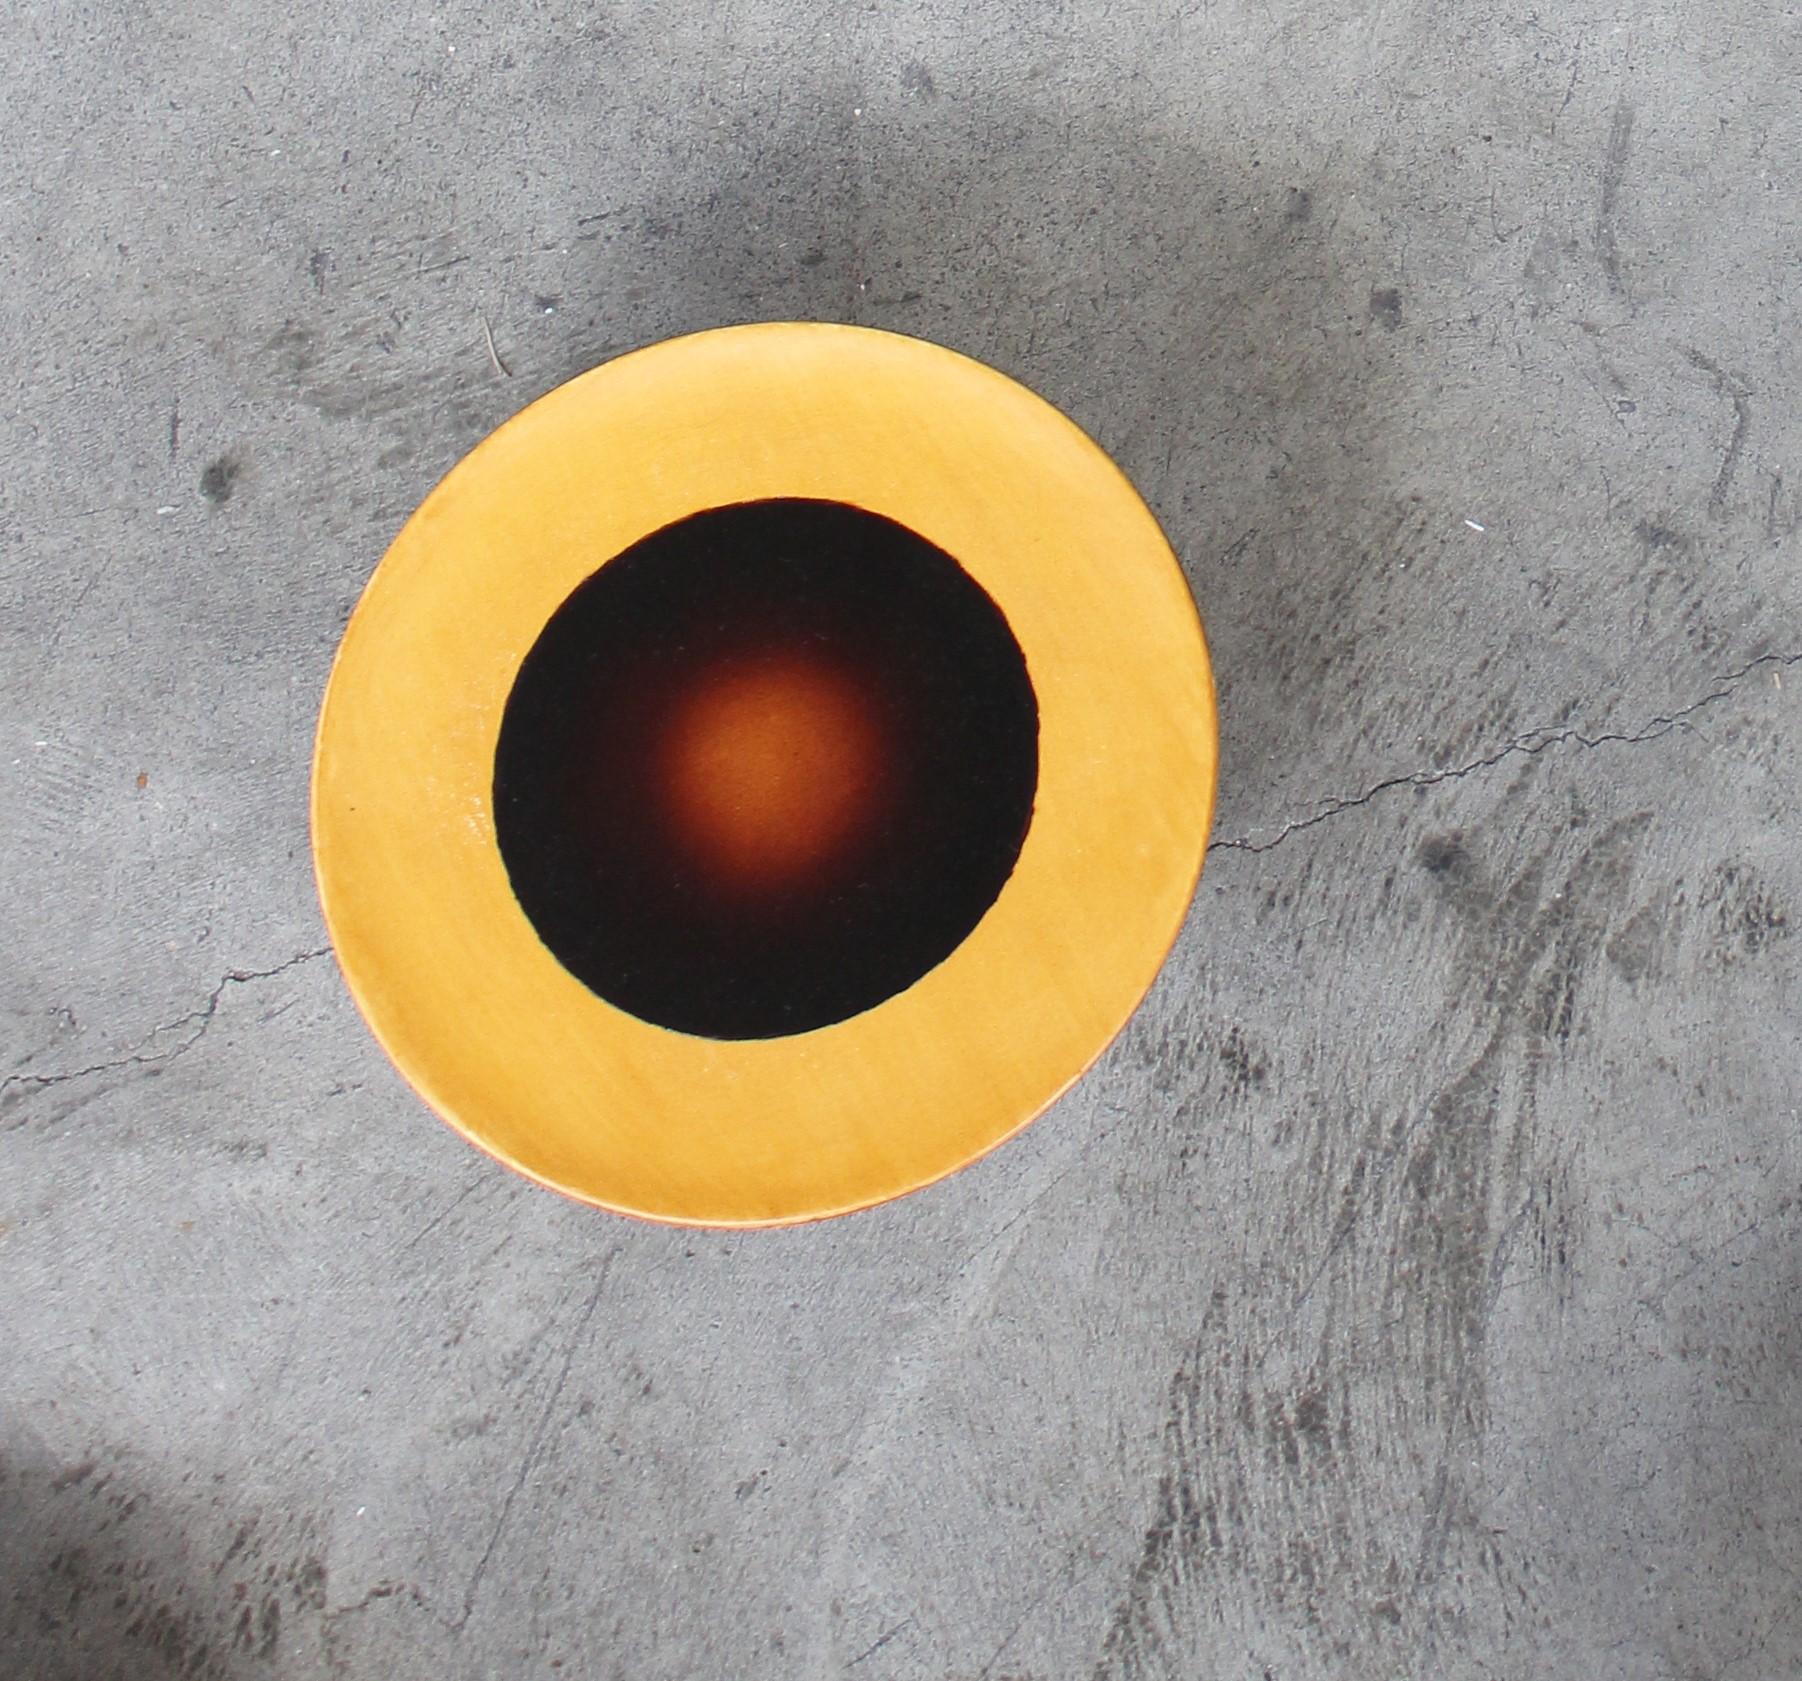 Ott another paradigmatic handmade ceramic High-plate by Studio Yoon Seok-hyeon
2019
Dimensions : L 18 x H 10 cm
MATERIAL : Ott (résine naturelle de l'arbre Ott), porcelaine
650g

Il est possible de personnaliser différentes couleurs dans la gamme de